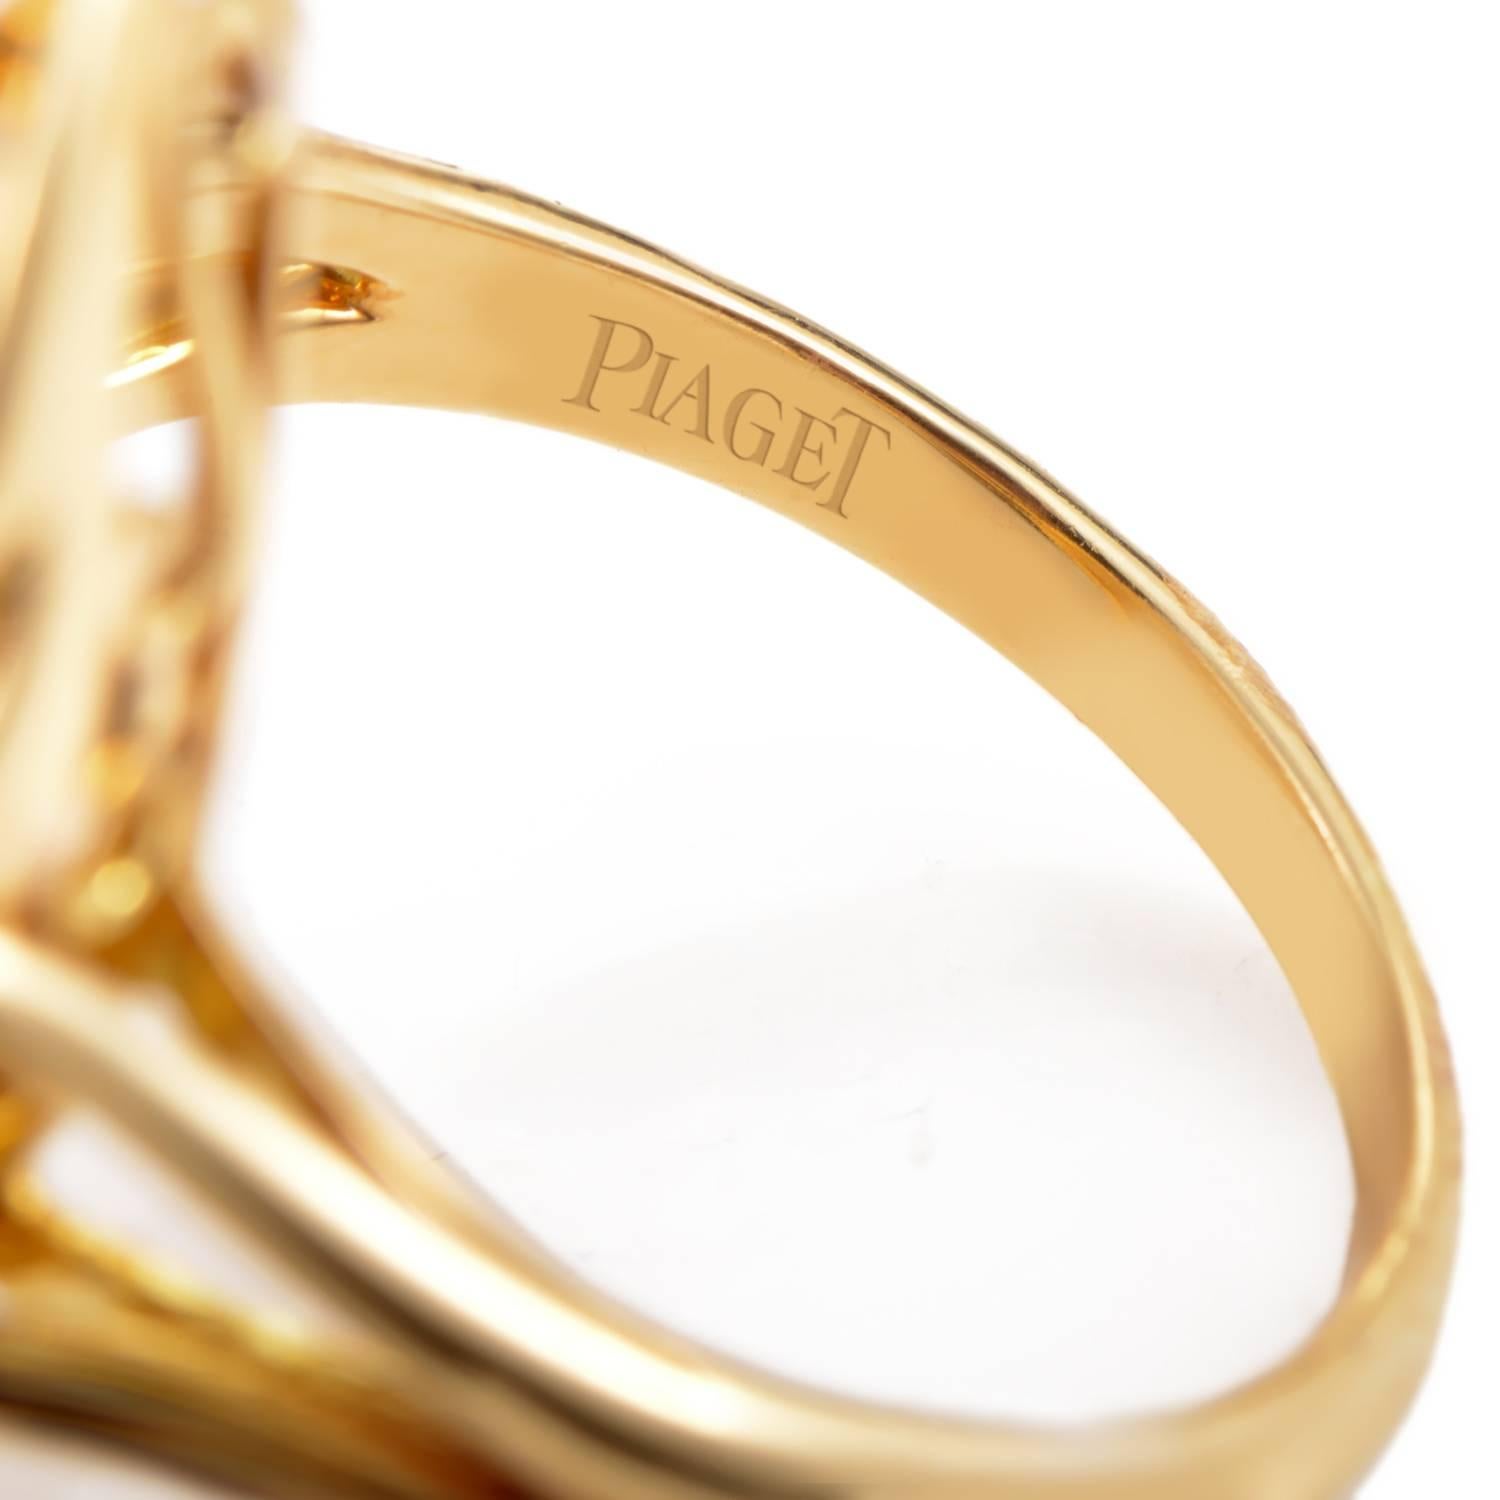 Women's Piaget Diamond Gold Ring